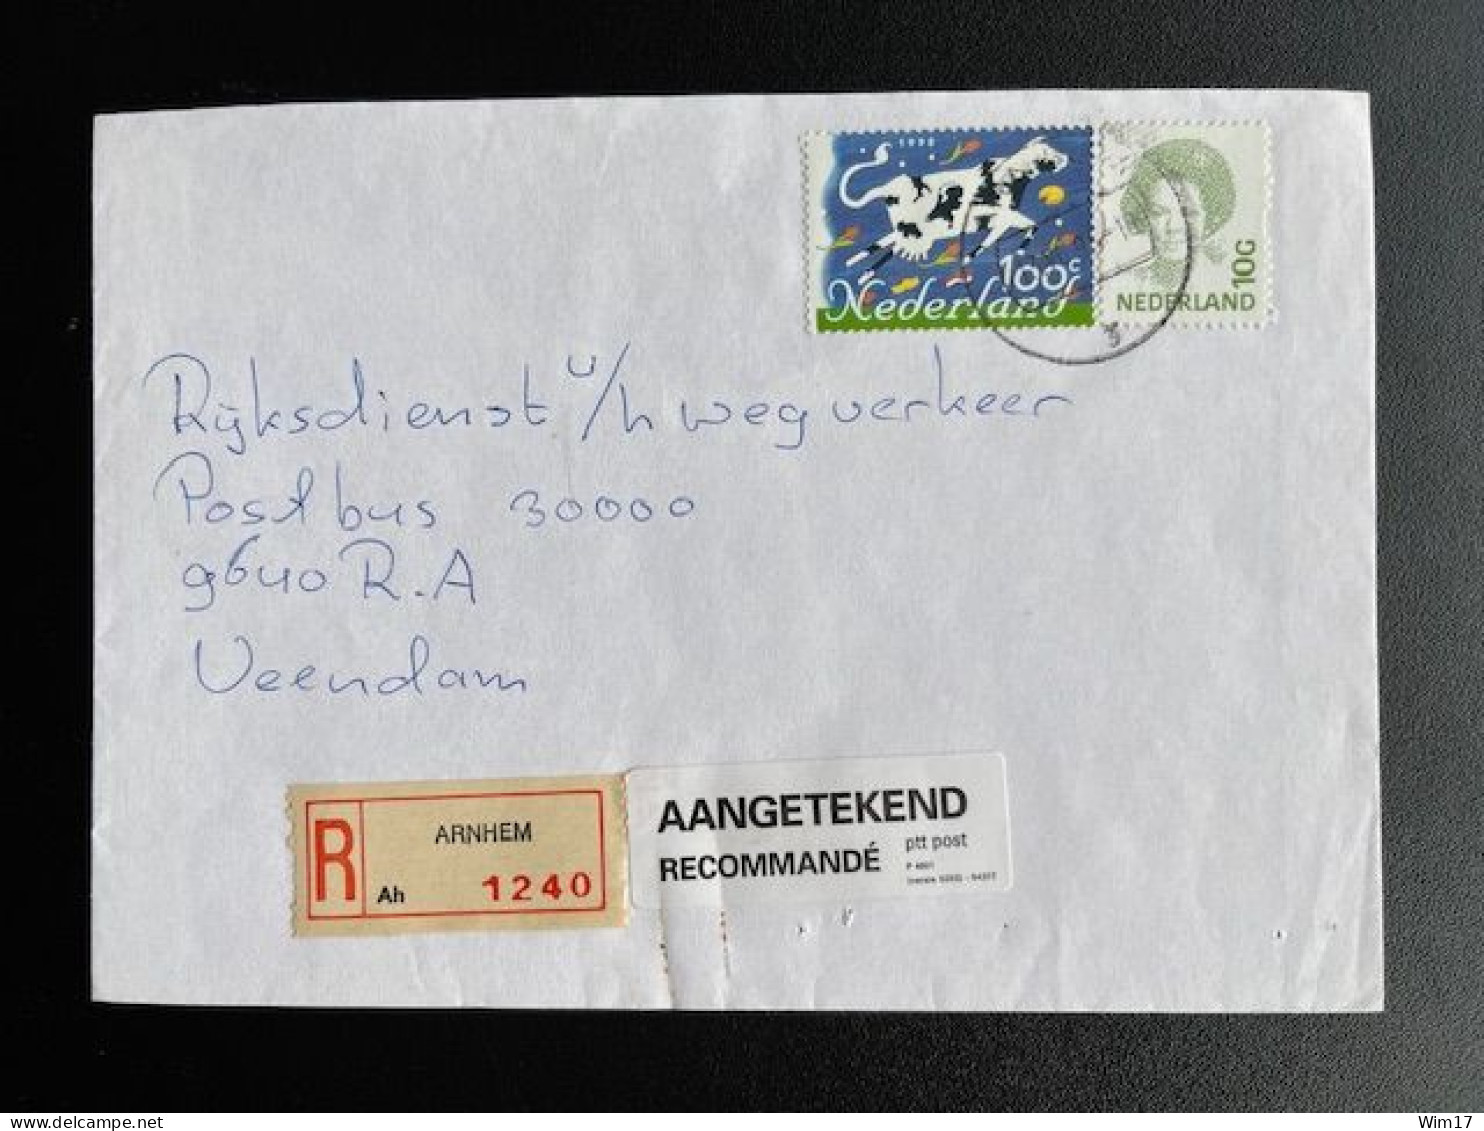 NETHERLANDS 1995 REGISTERED LETTER ARNHEM TO VEENDAM 13-06-1995 NEDERLAND AANGETEKEND - Lettres & Documents